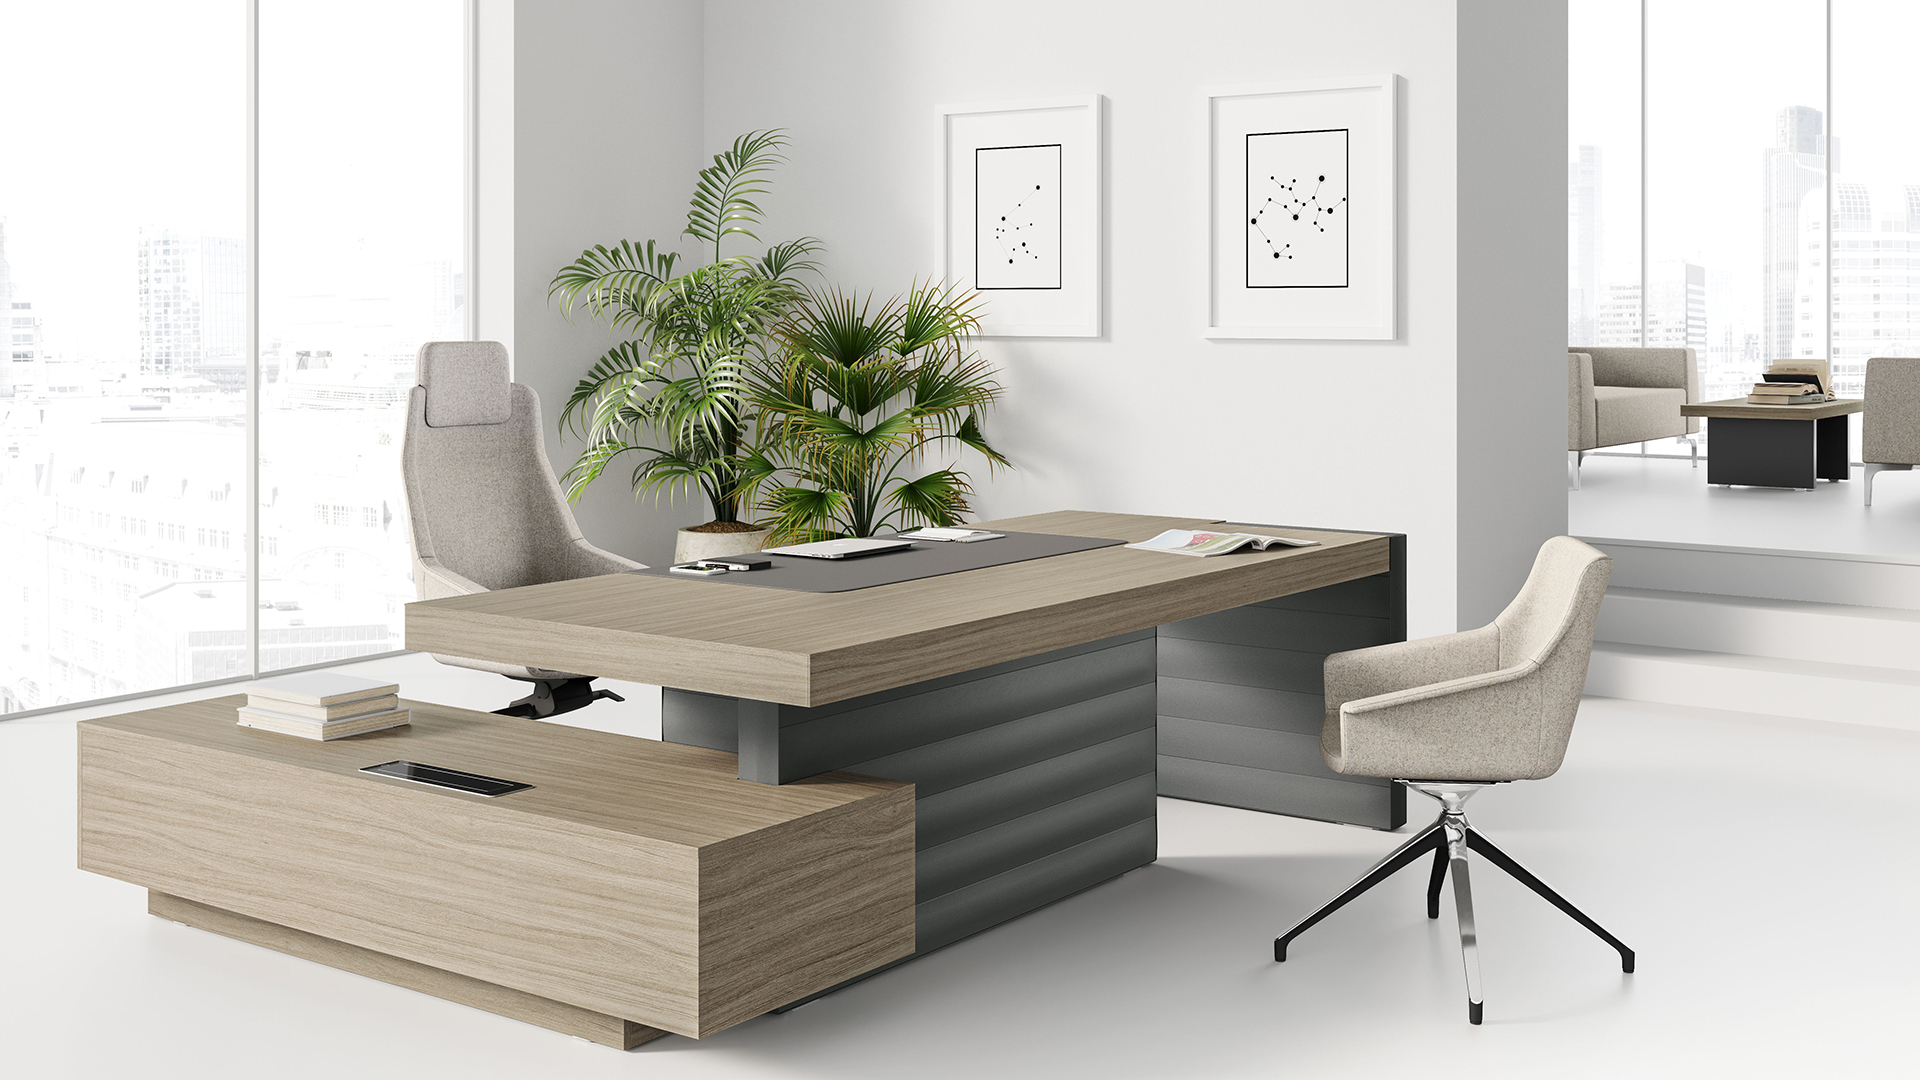 Мягкая мебель Jera идеальна для обустройства зоны отдыха в кабинете